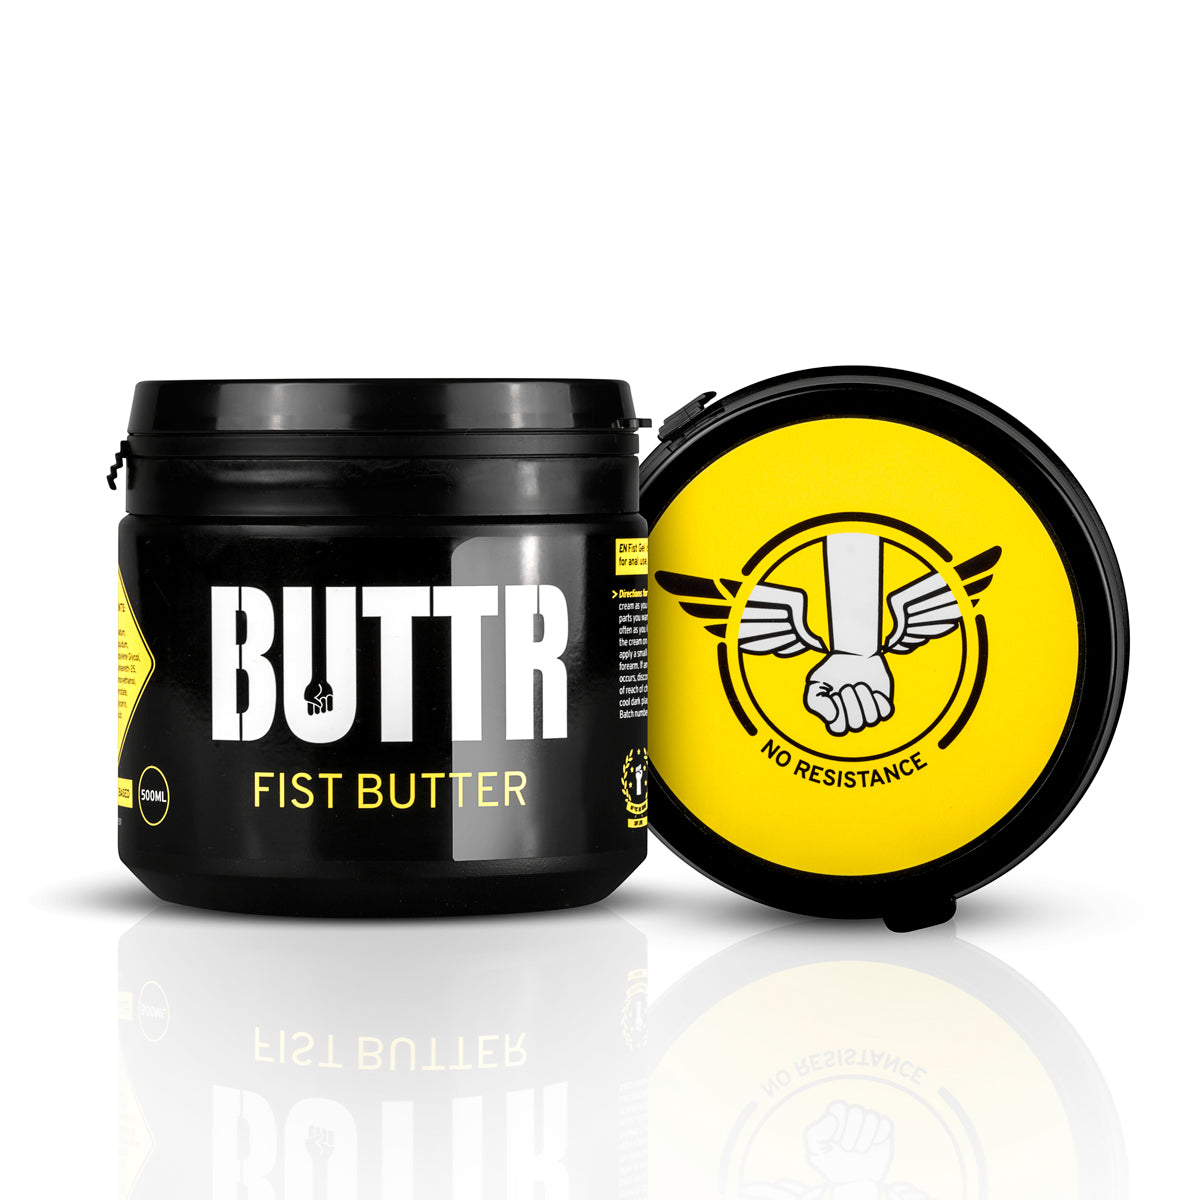 BUTTR Fisting  Butter is extreem glad en dik glijmiddel, en daardoor geschikt voor bottoms en versa's die moeite hebben met anale penetratie. Te koop bij Flavourez